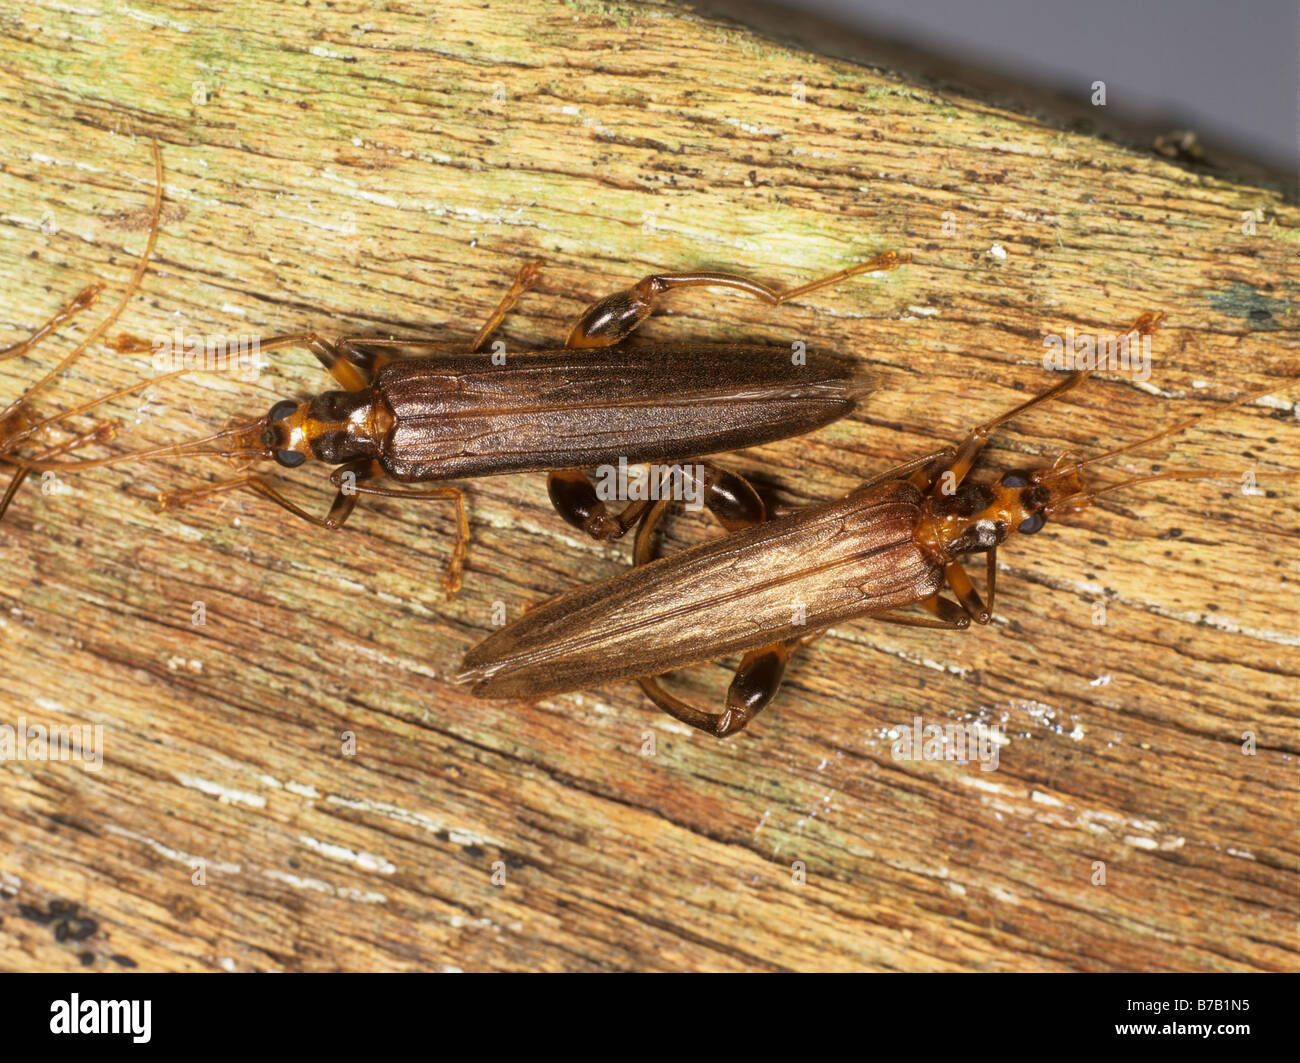 Un gonflement des jambes flower beetle Oedemera femorata de bois pourri nouvellement éclos Banque D'Images